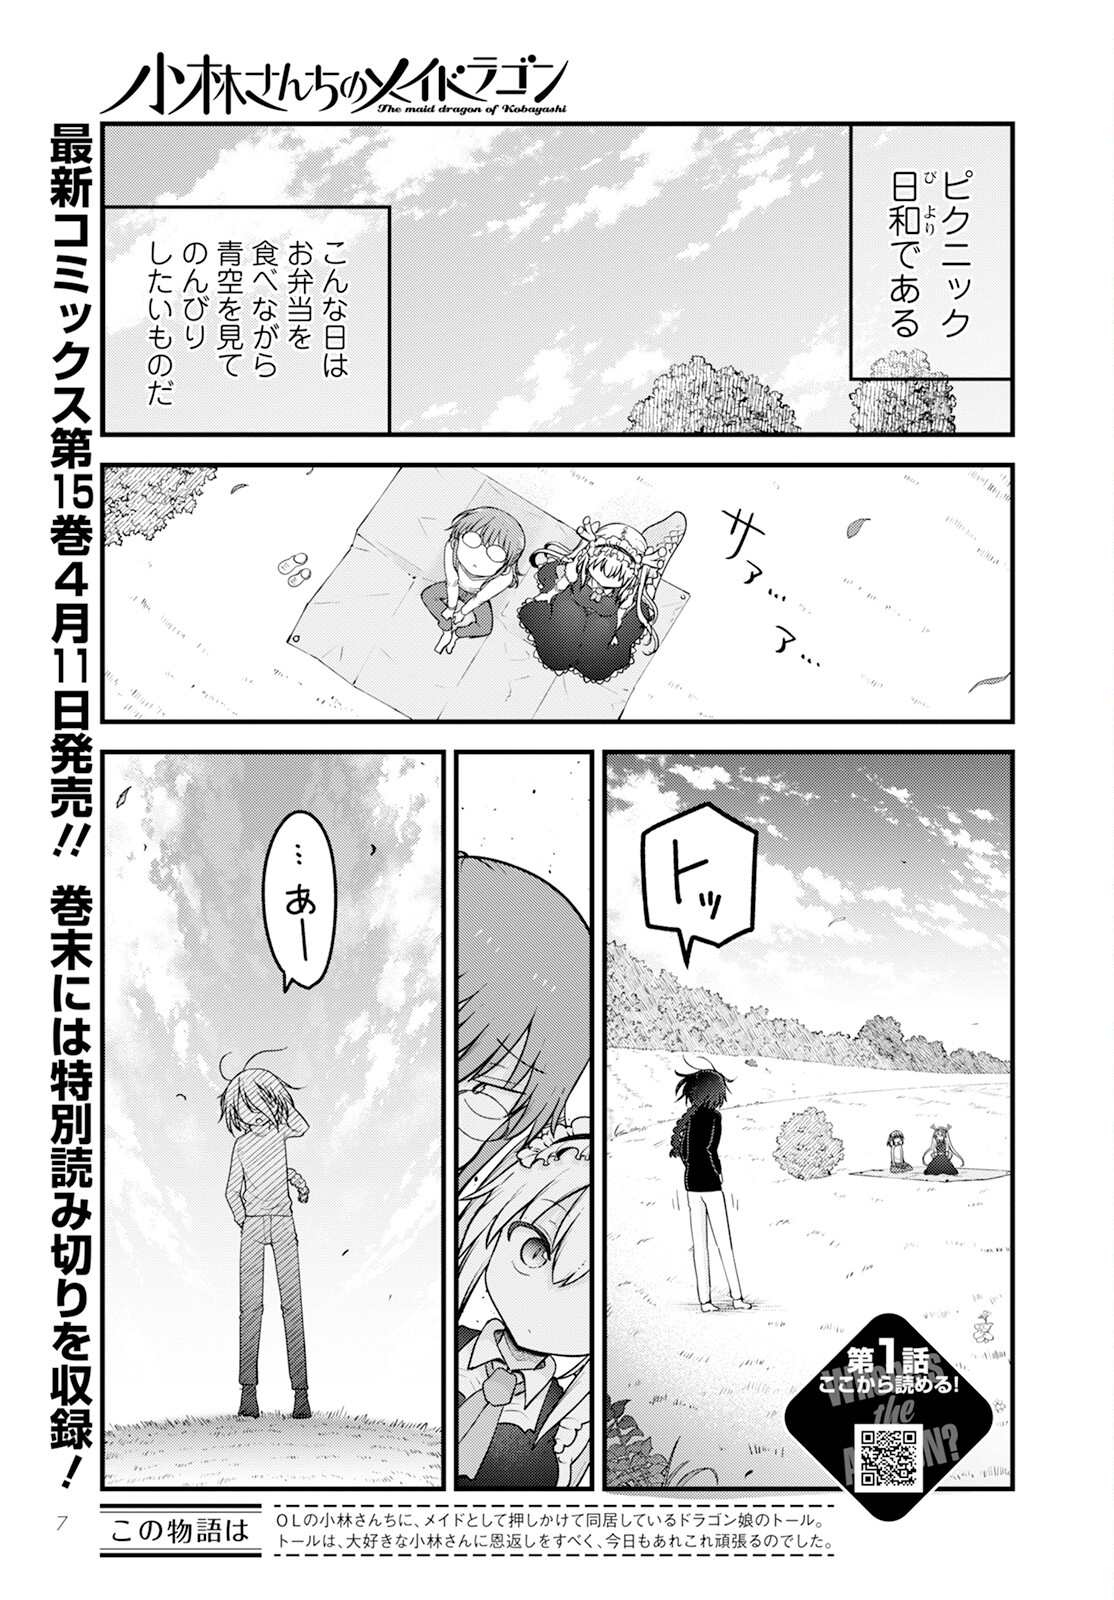 Kobayashi-san Chi no Maid Dragon - Chapter 141 - Page 1